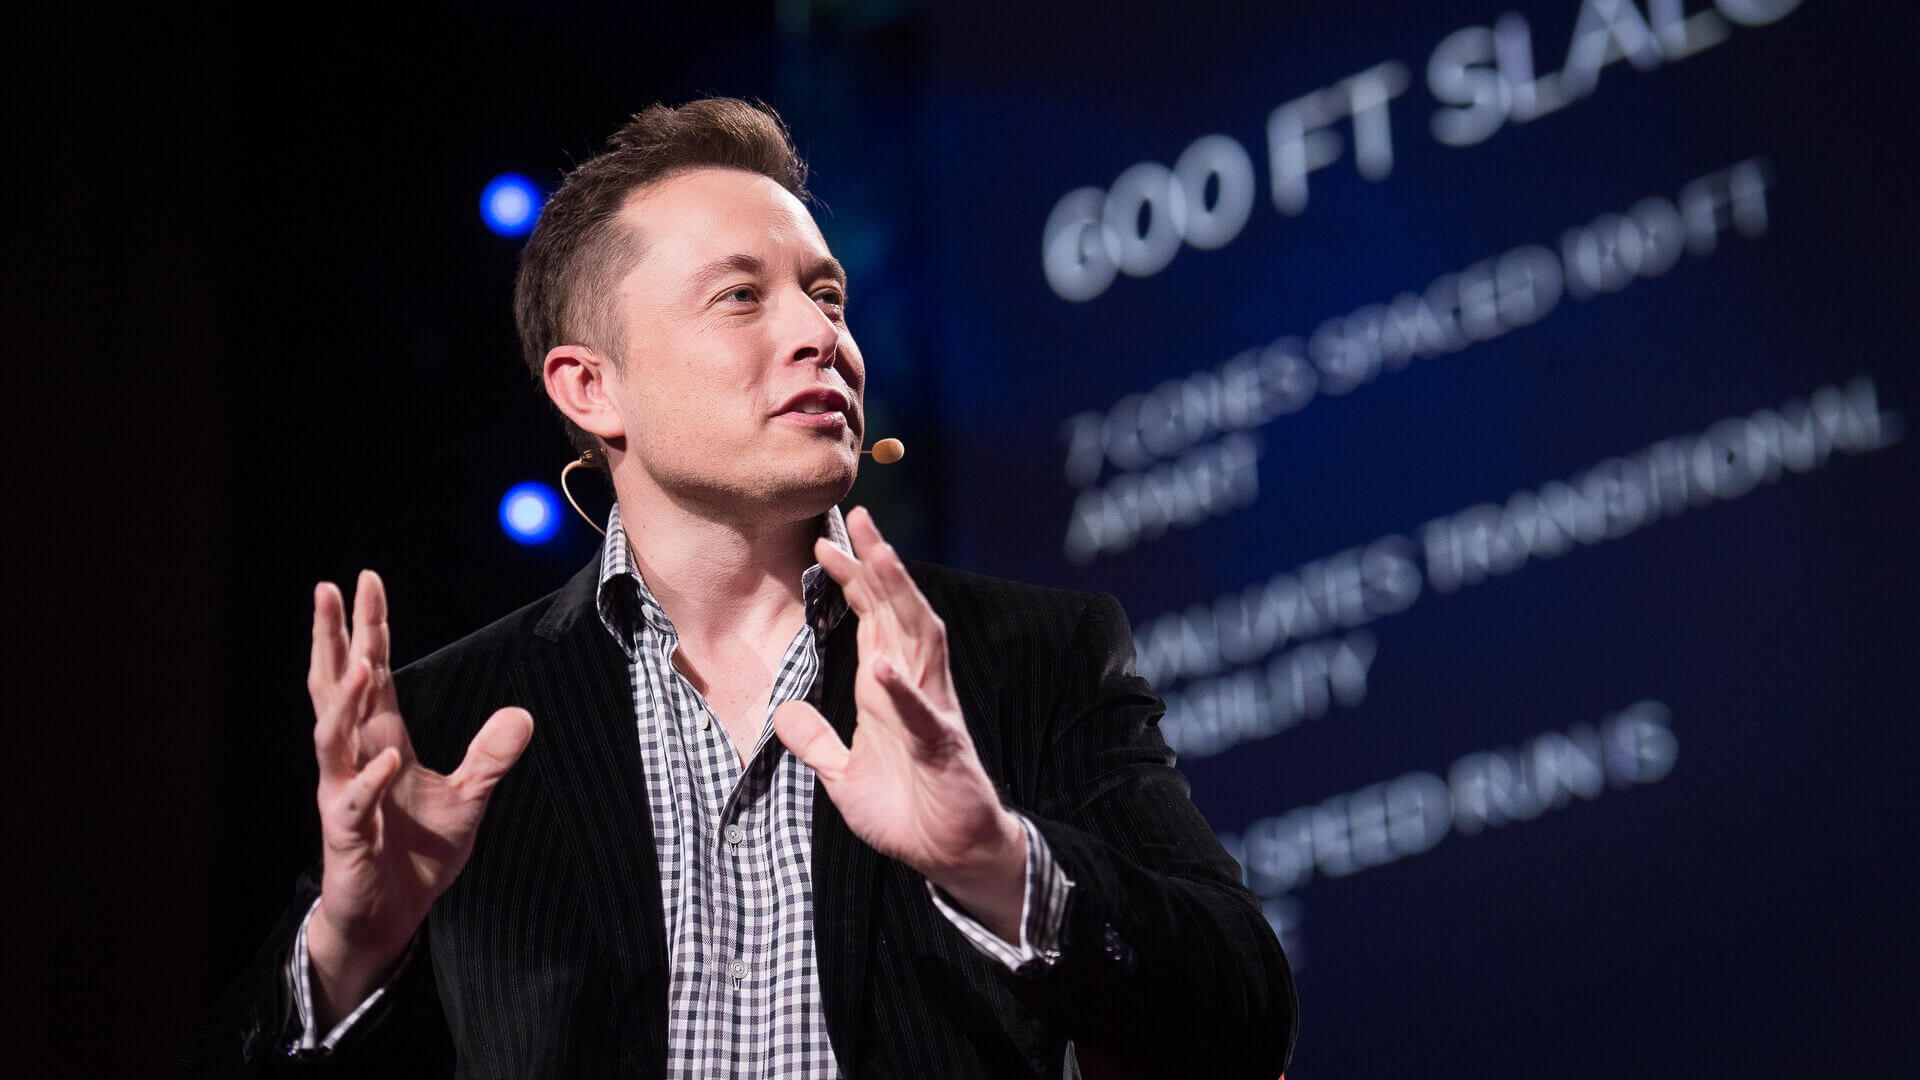 Elon Musk - ความคิดของผู้ประกอบการ